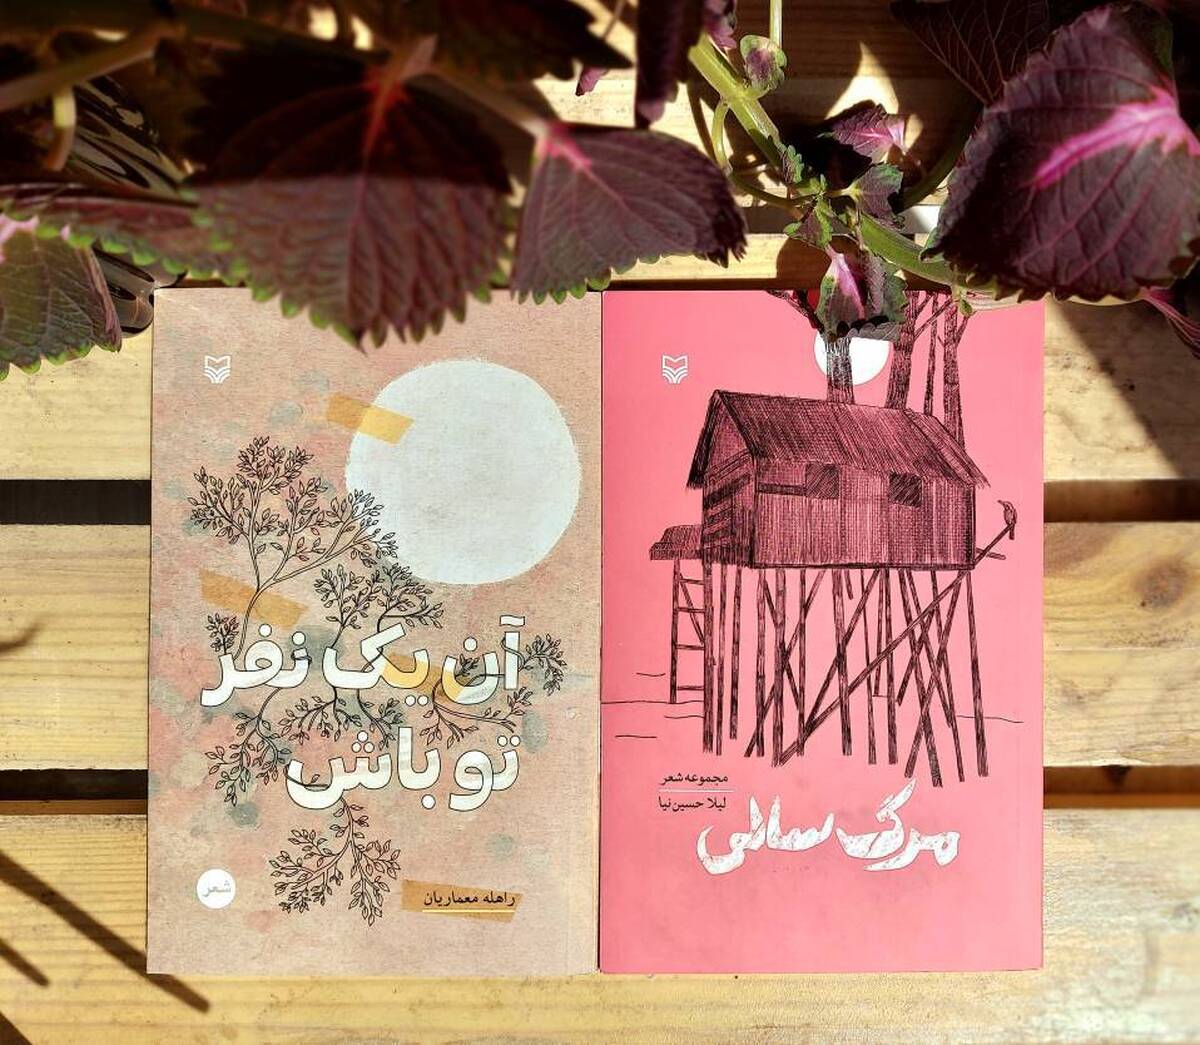 سوره مهر دو دفتر شعر جدید روانه بازار کرد 